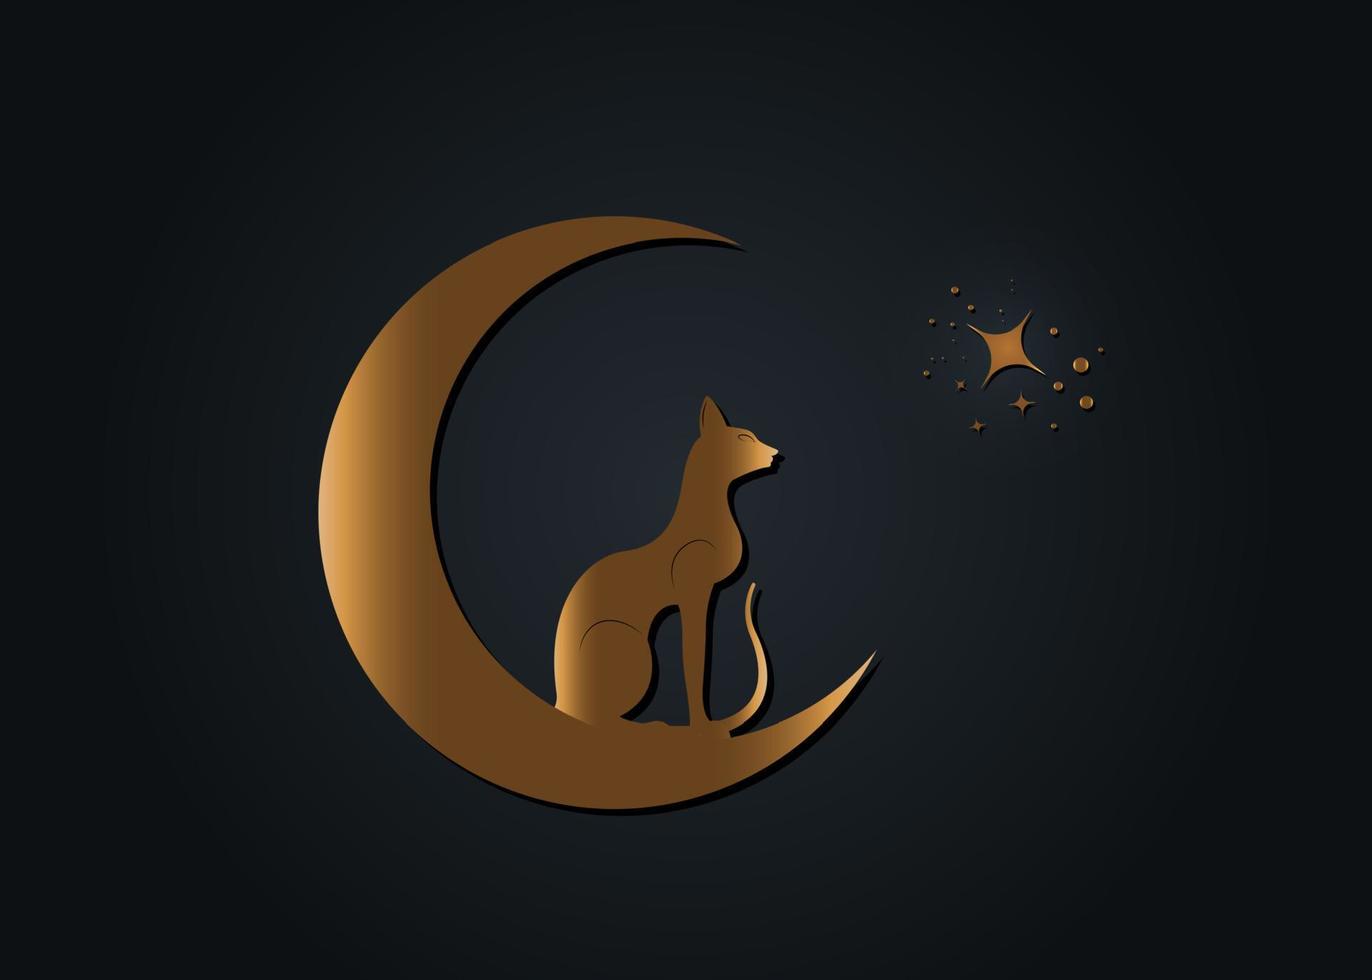 gatto nero egiziano seduto sulla luna crescente, guarda le stelle. logo alchimia d'oro simbolo wicca, stile boho, icona tatuaggio oro. illustrazione vettoriale isolato su sfondo nero